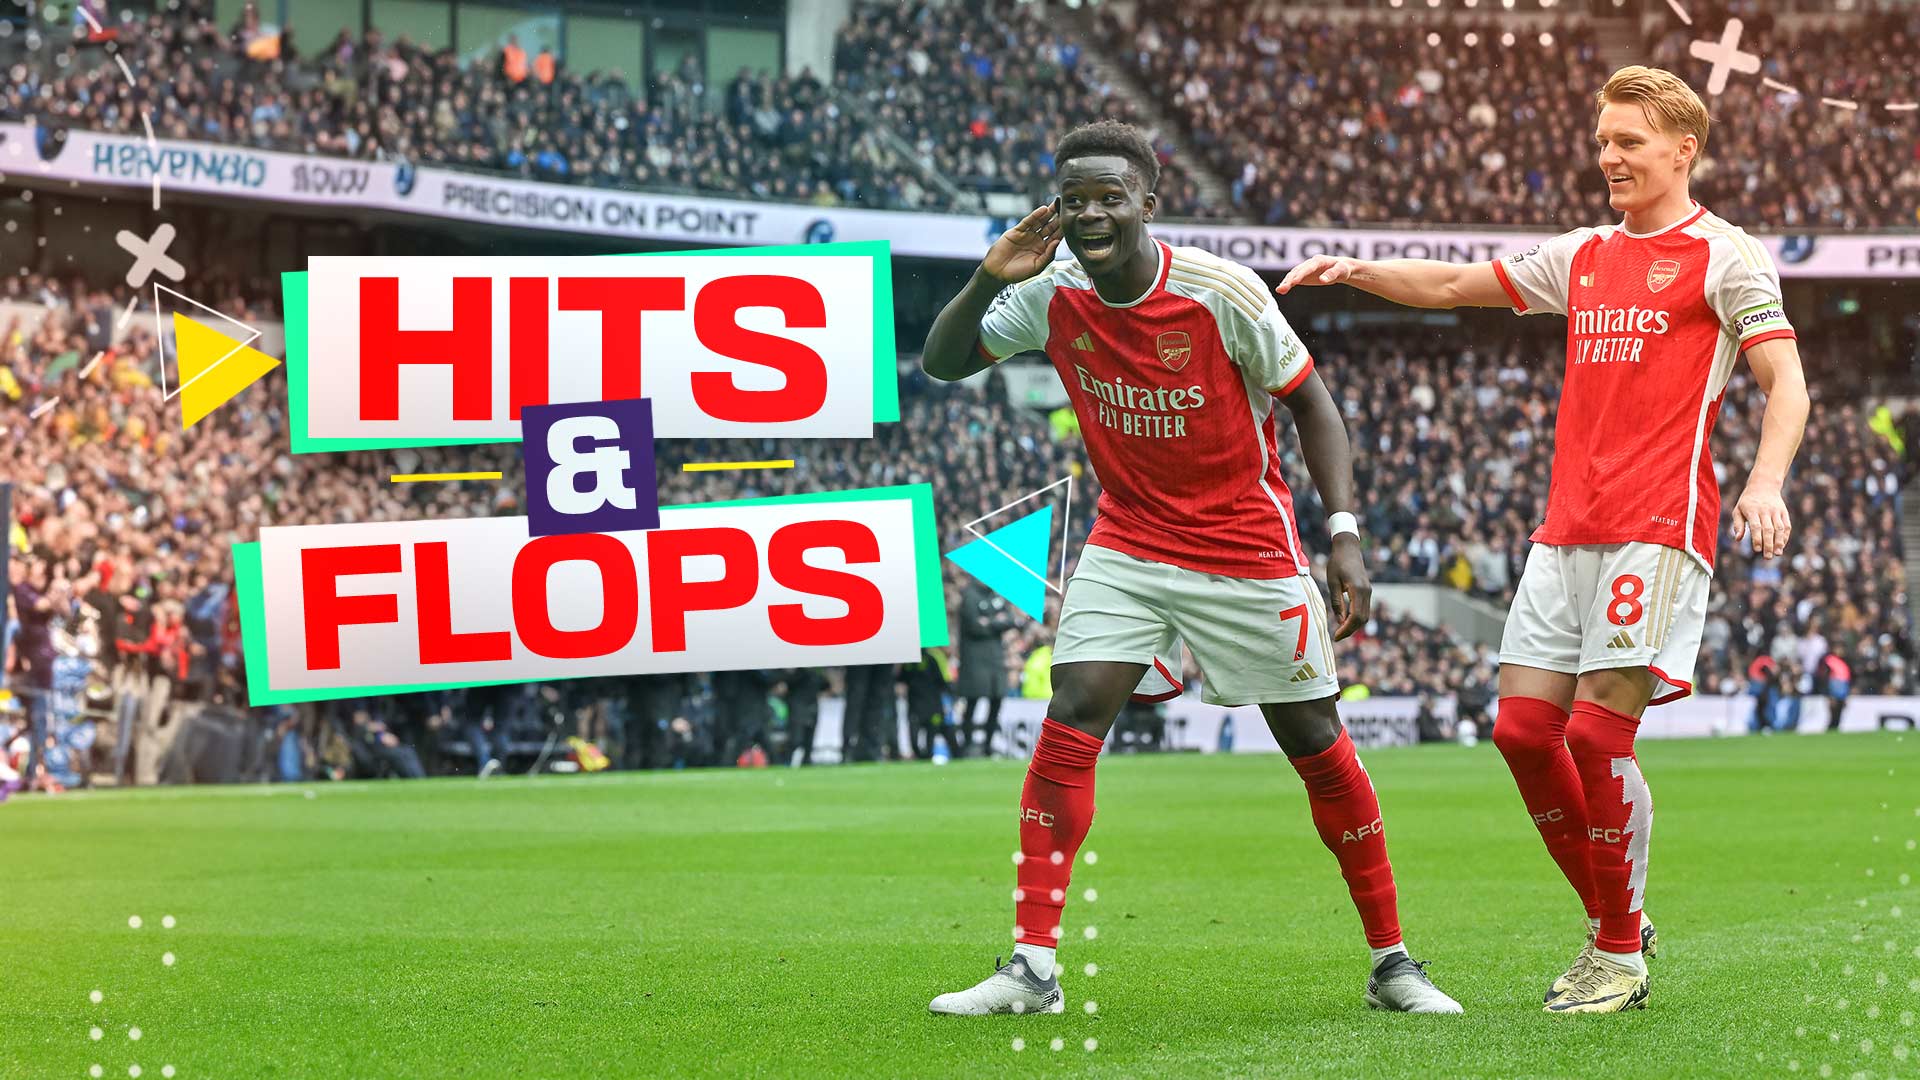 Hits & Flops: Tottenham vs Arsenal